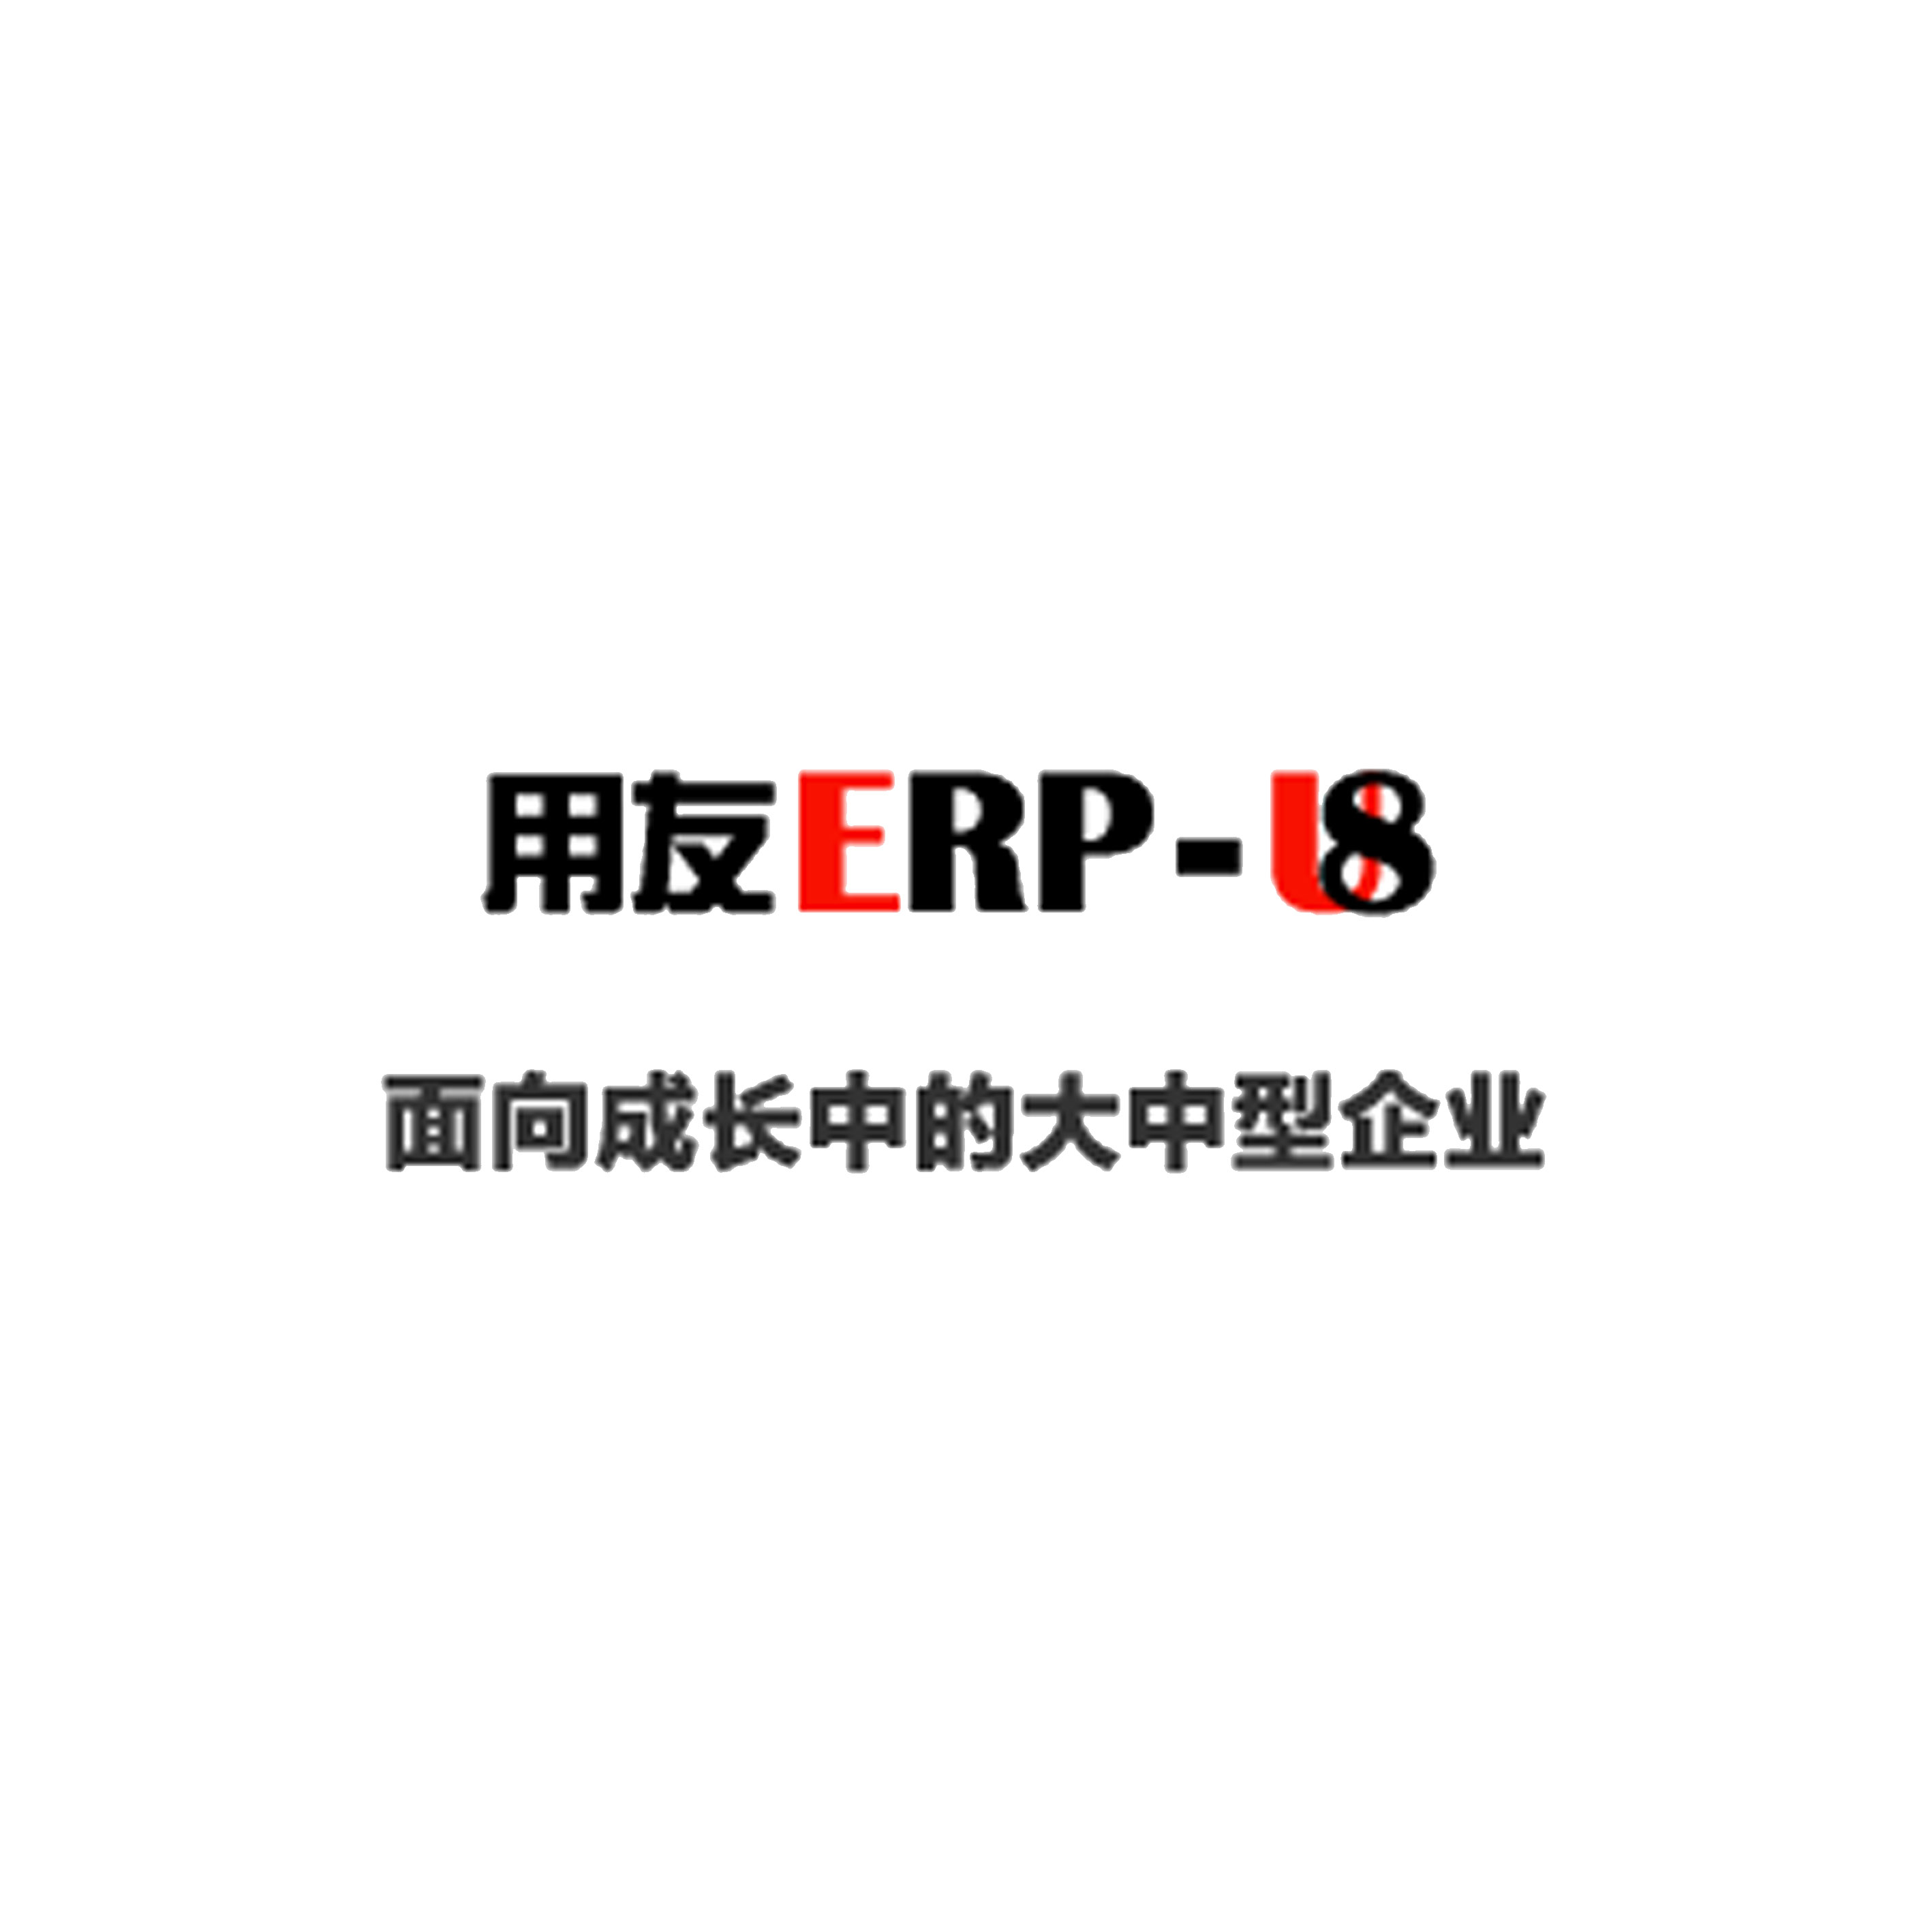 U8仓储管理系统_青岛仓库管理软件_与erp软件无缝对接